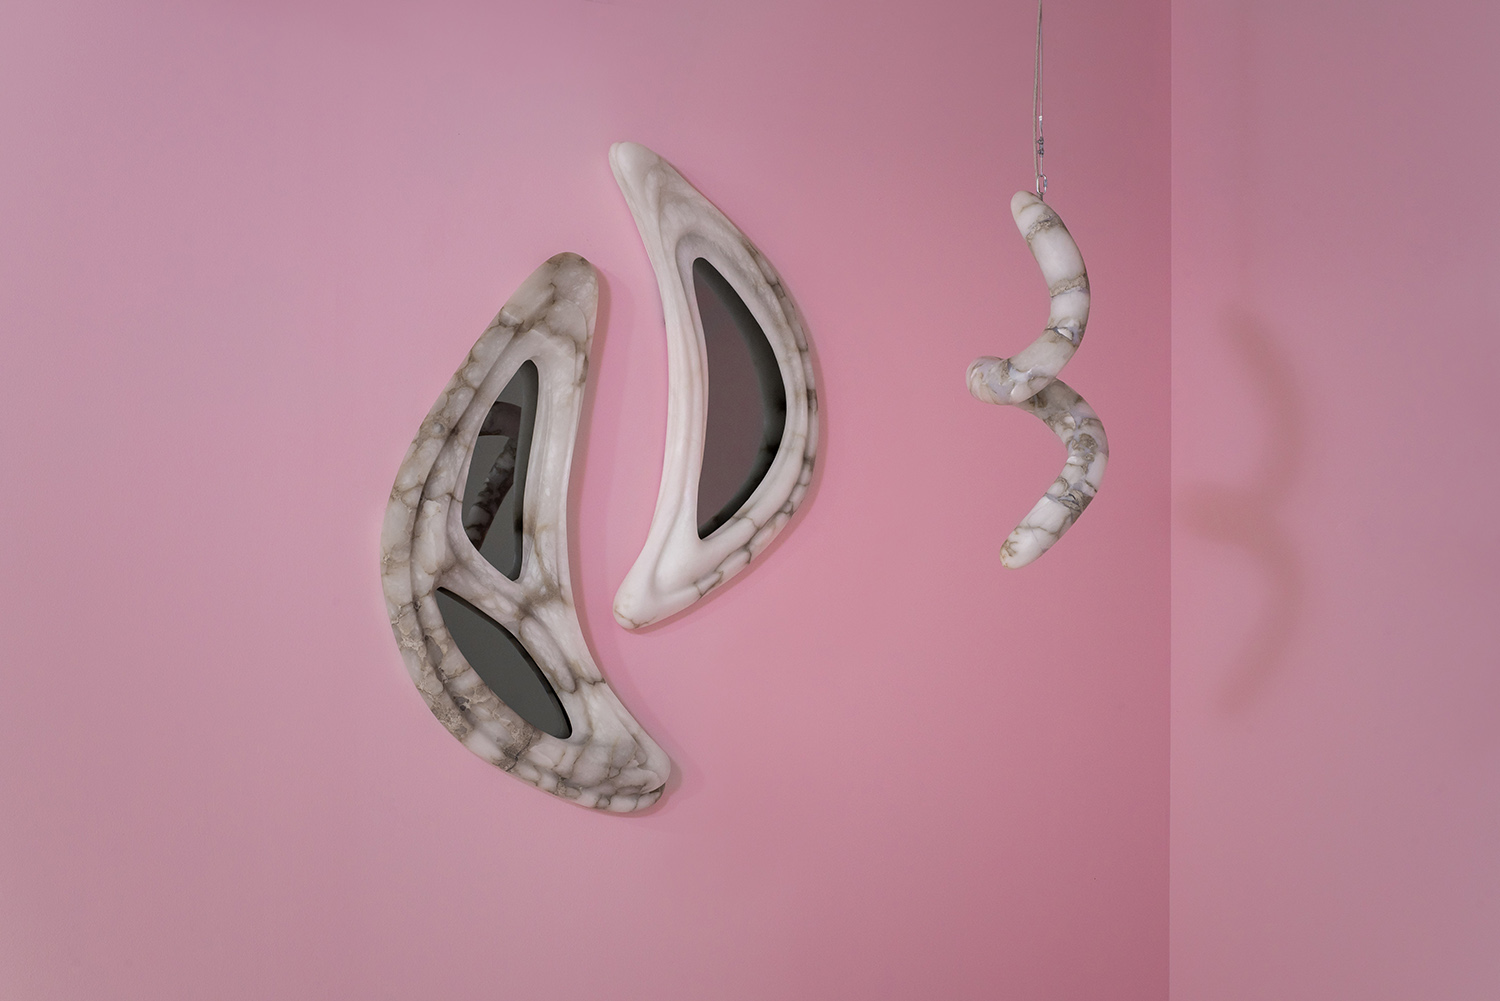 Alabaster mirrors and chandelier - Amarist Studio